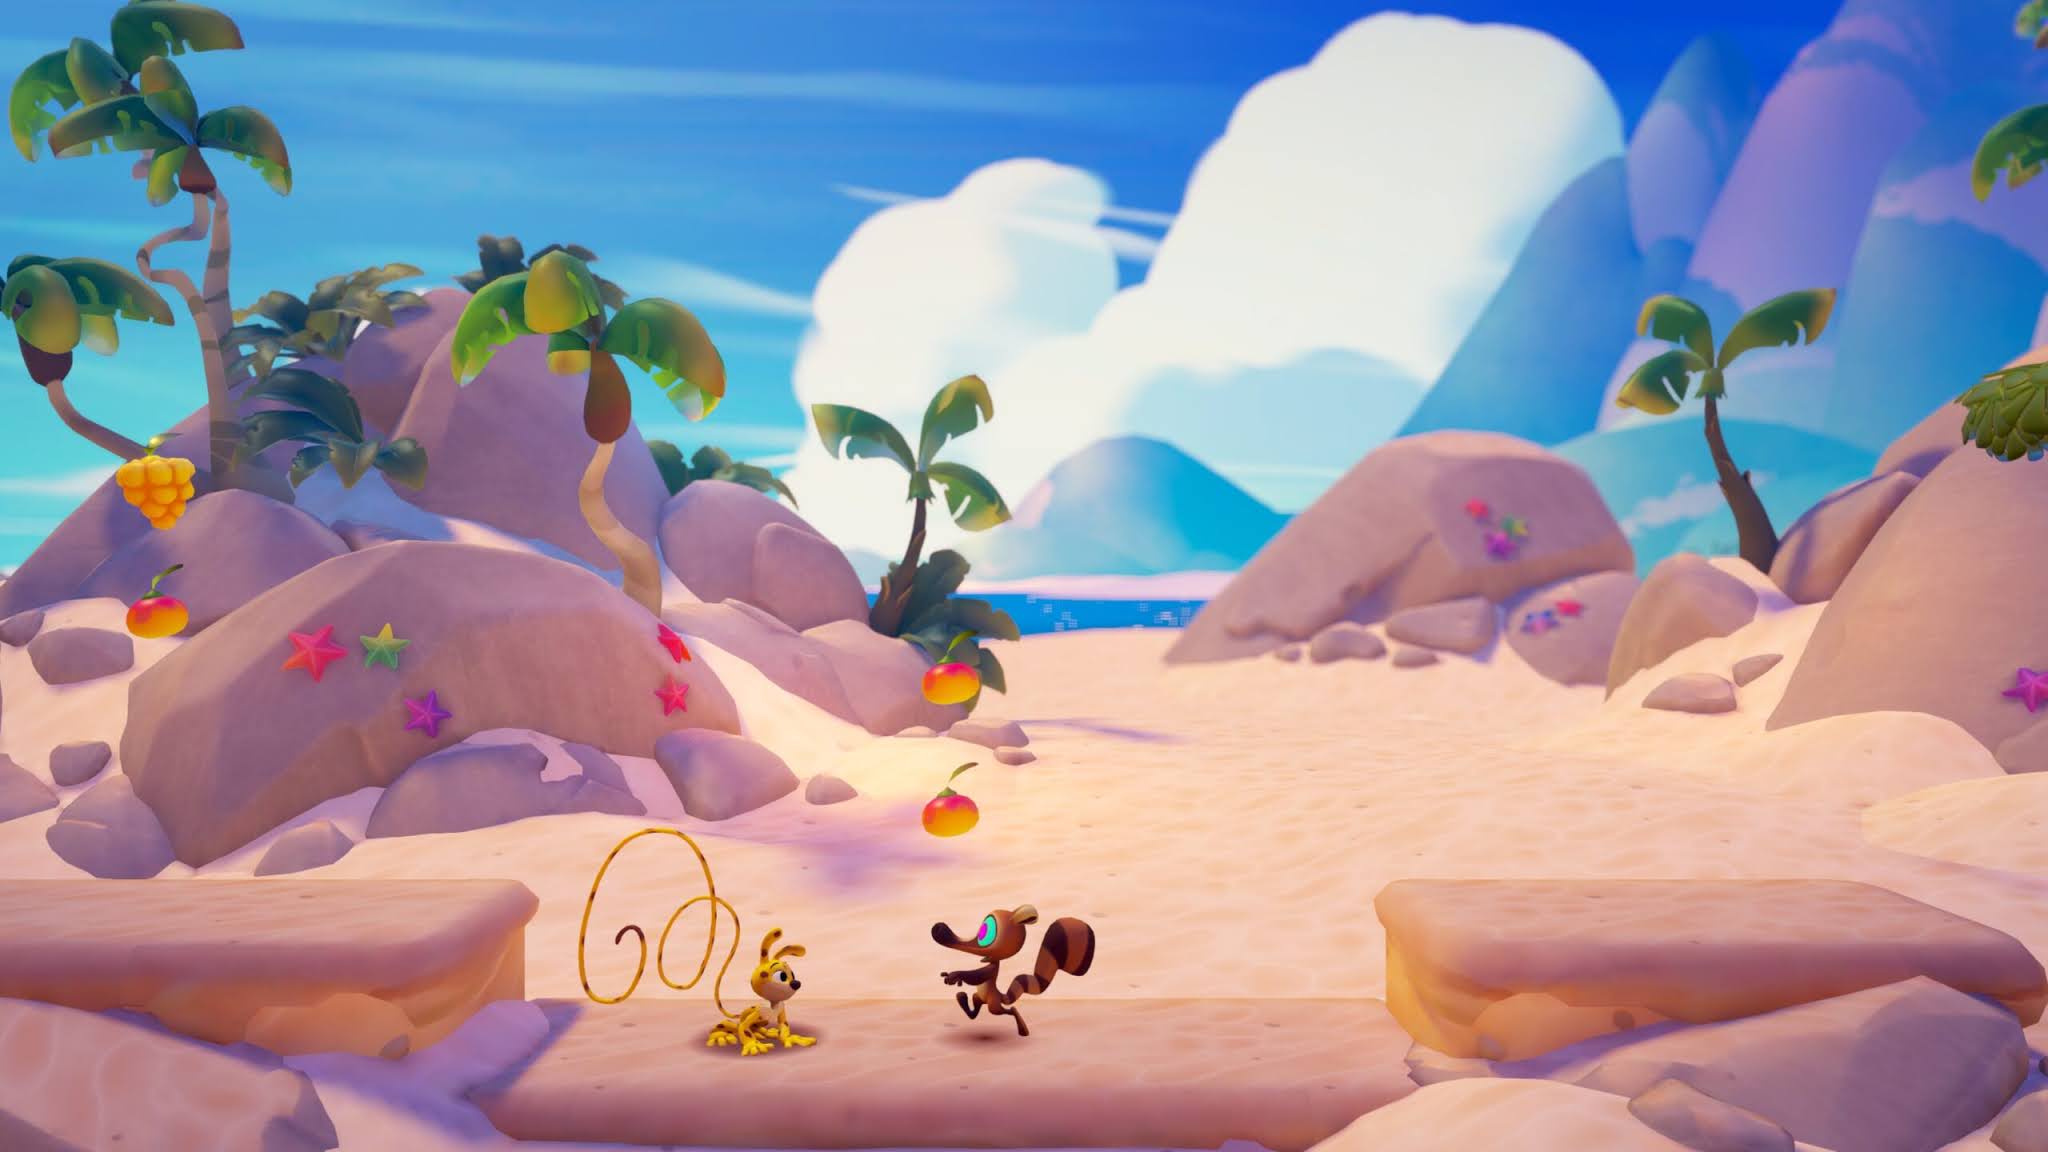 Marsupilami: Hoobadventure, jogo de plataforma 2.5D, é anunciado